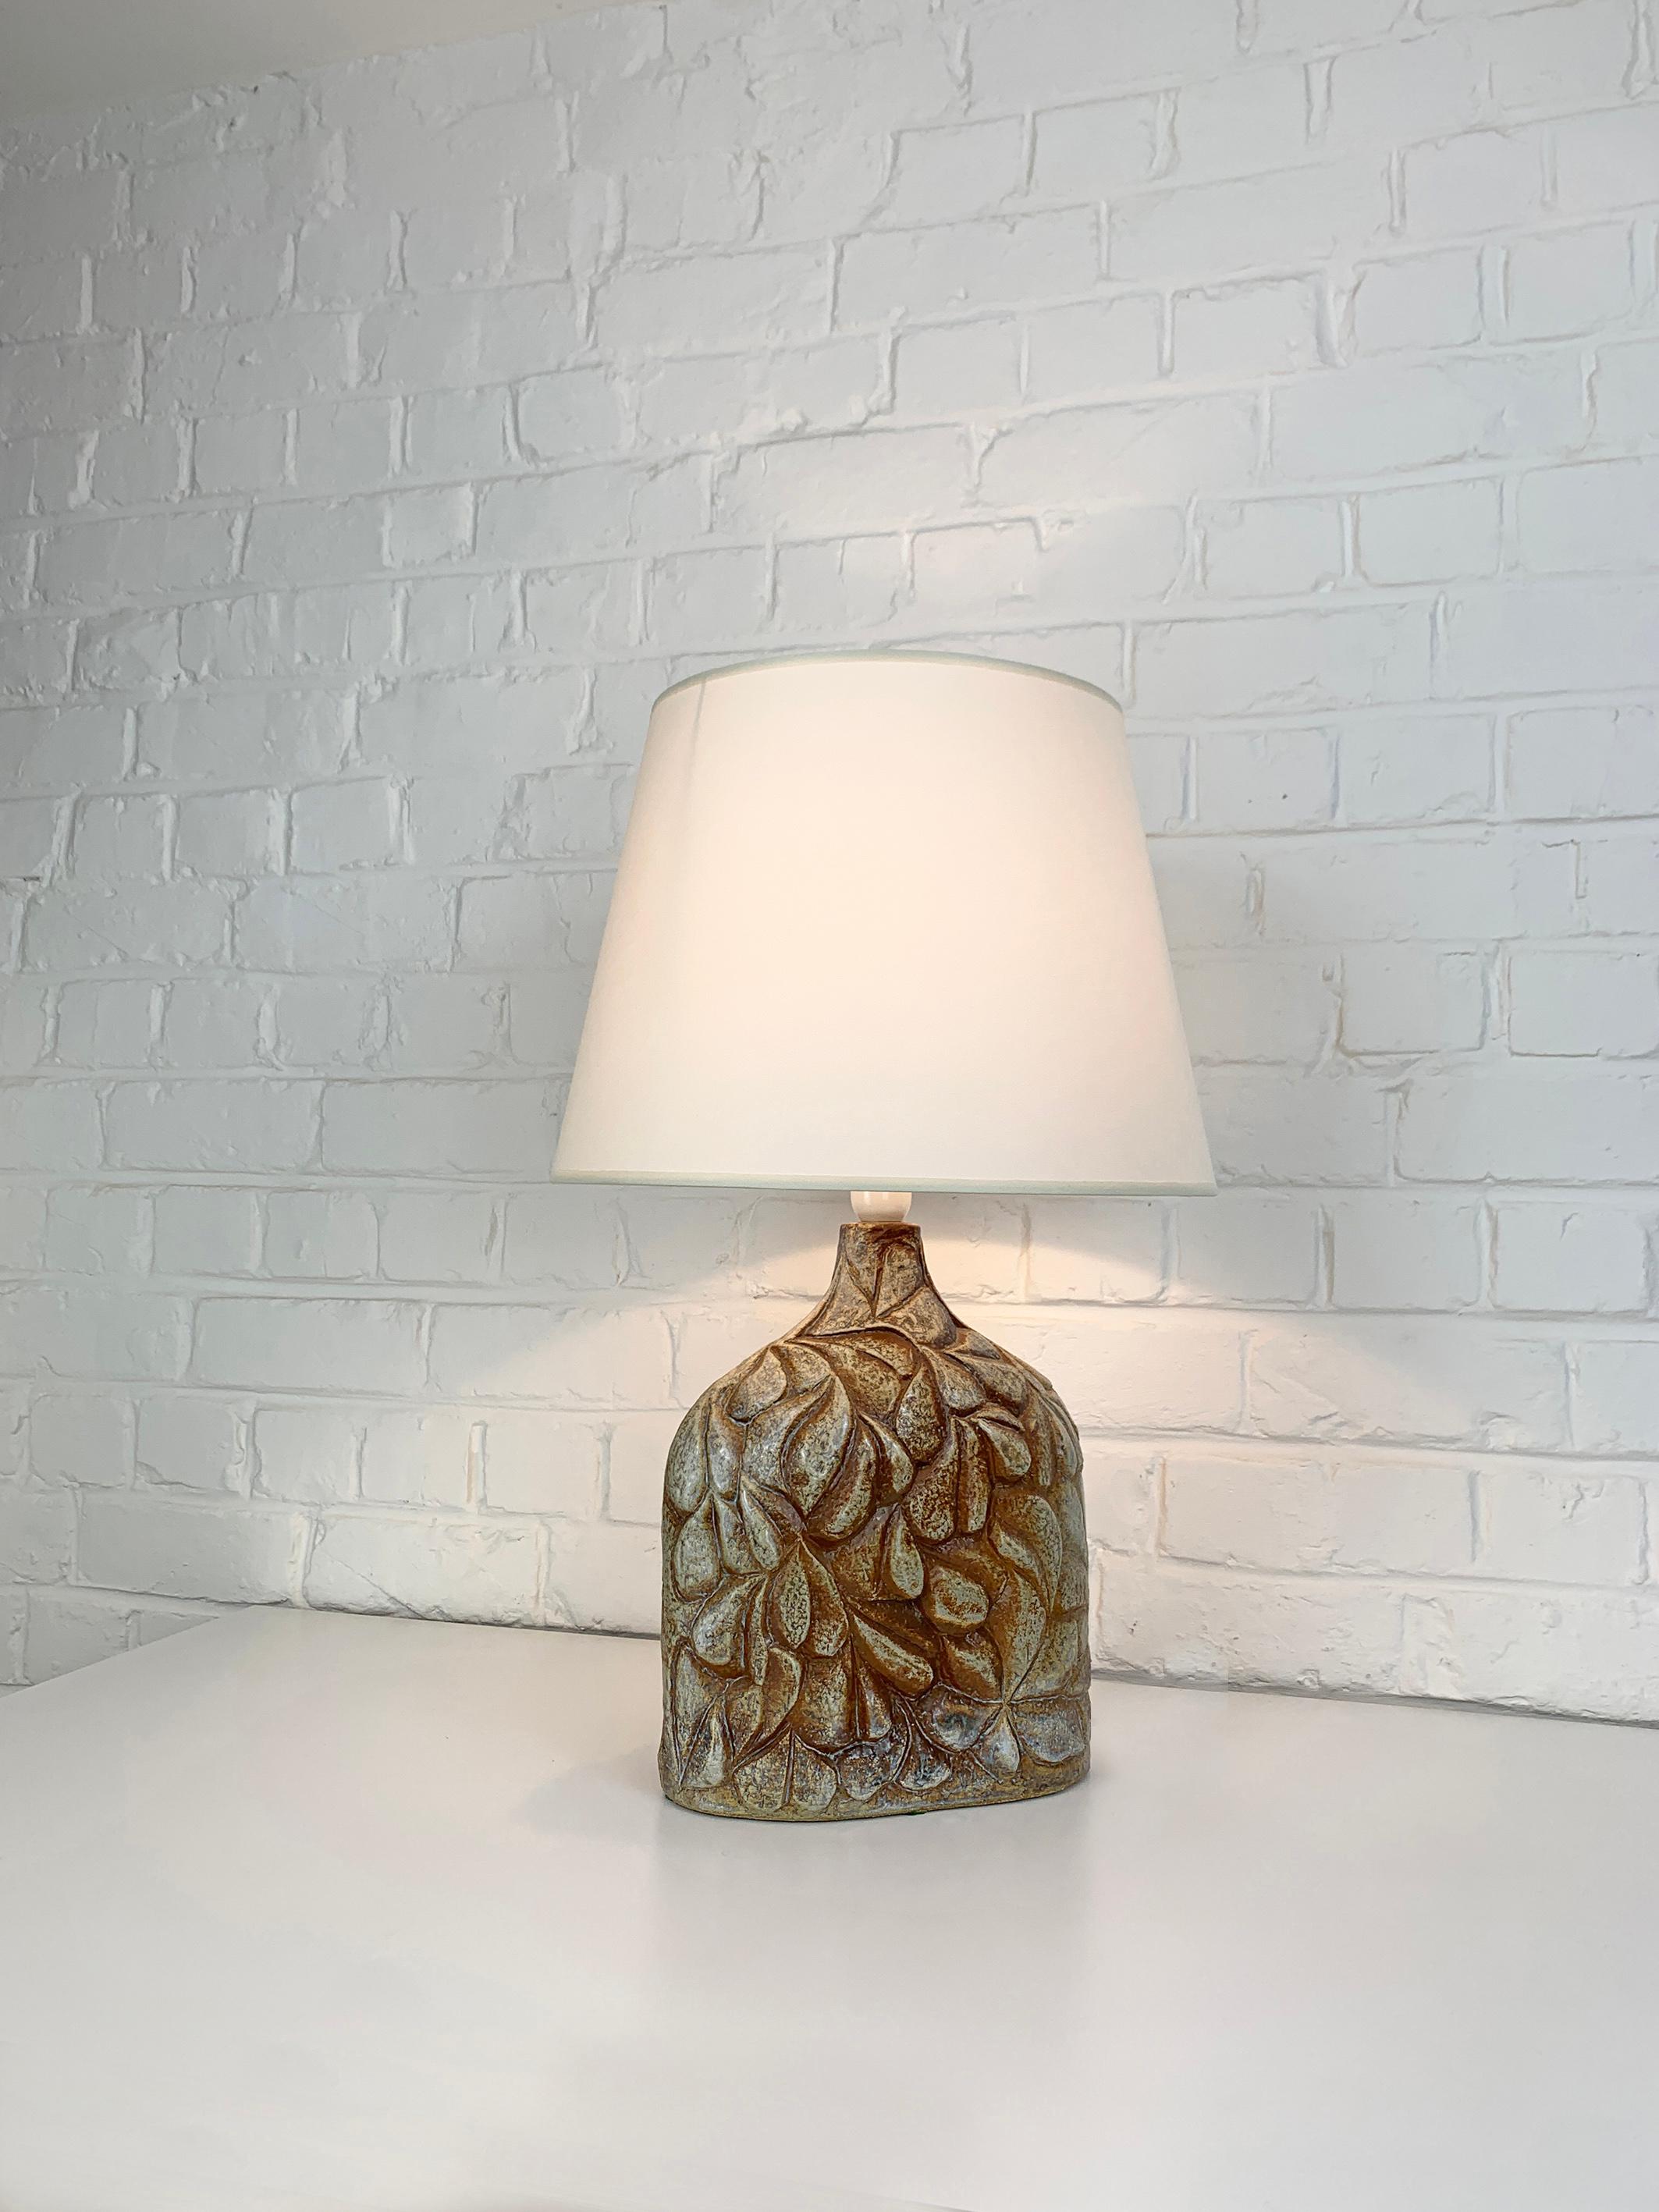 Lampe de table danoise en grès du milieu du siècle dernier des années 1970, attribuée à Haico Nitzsche. Lampe sculpturale en grès émaillé de couleur terre. 

Haico Nitzsche a suivi une formation en céramique en Allemagne avant d'enseigner au